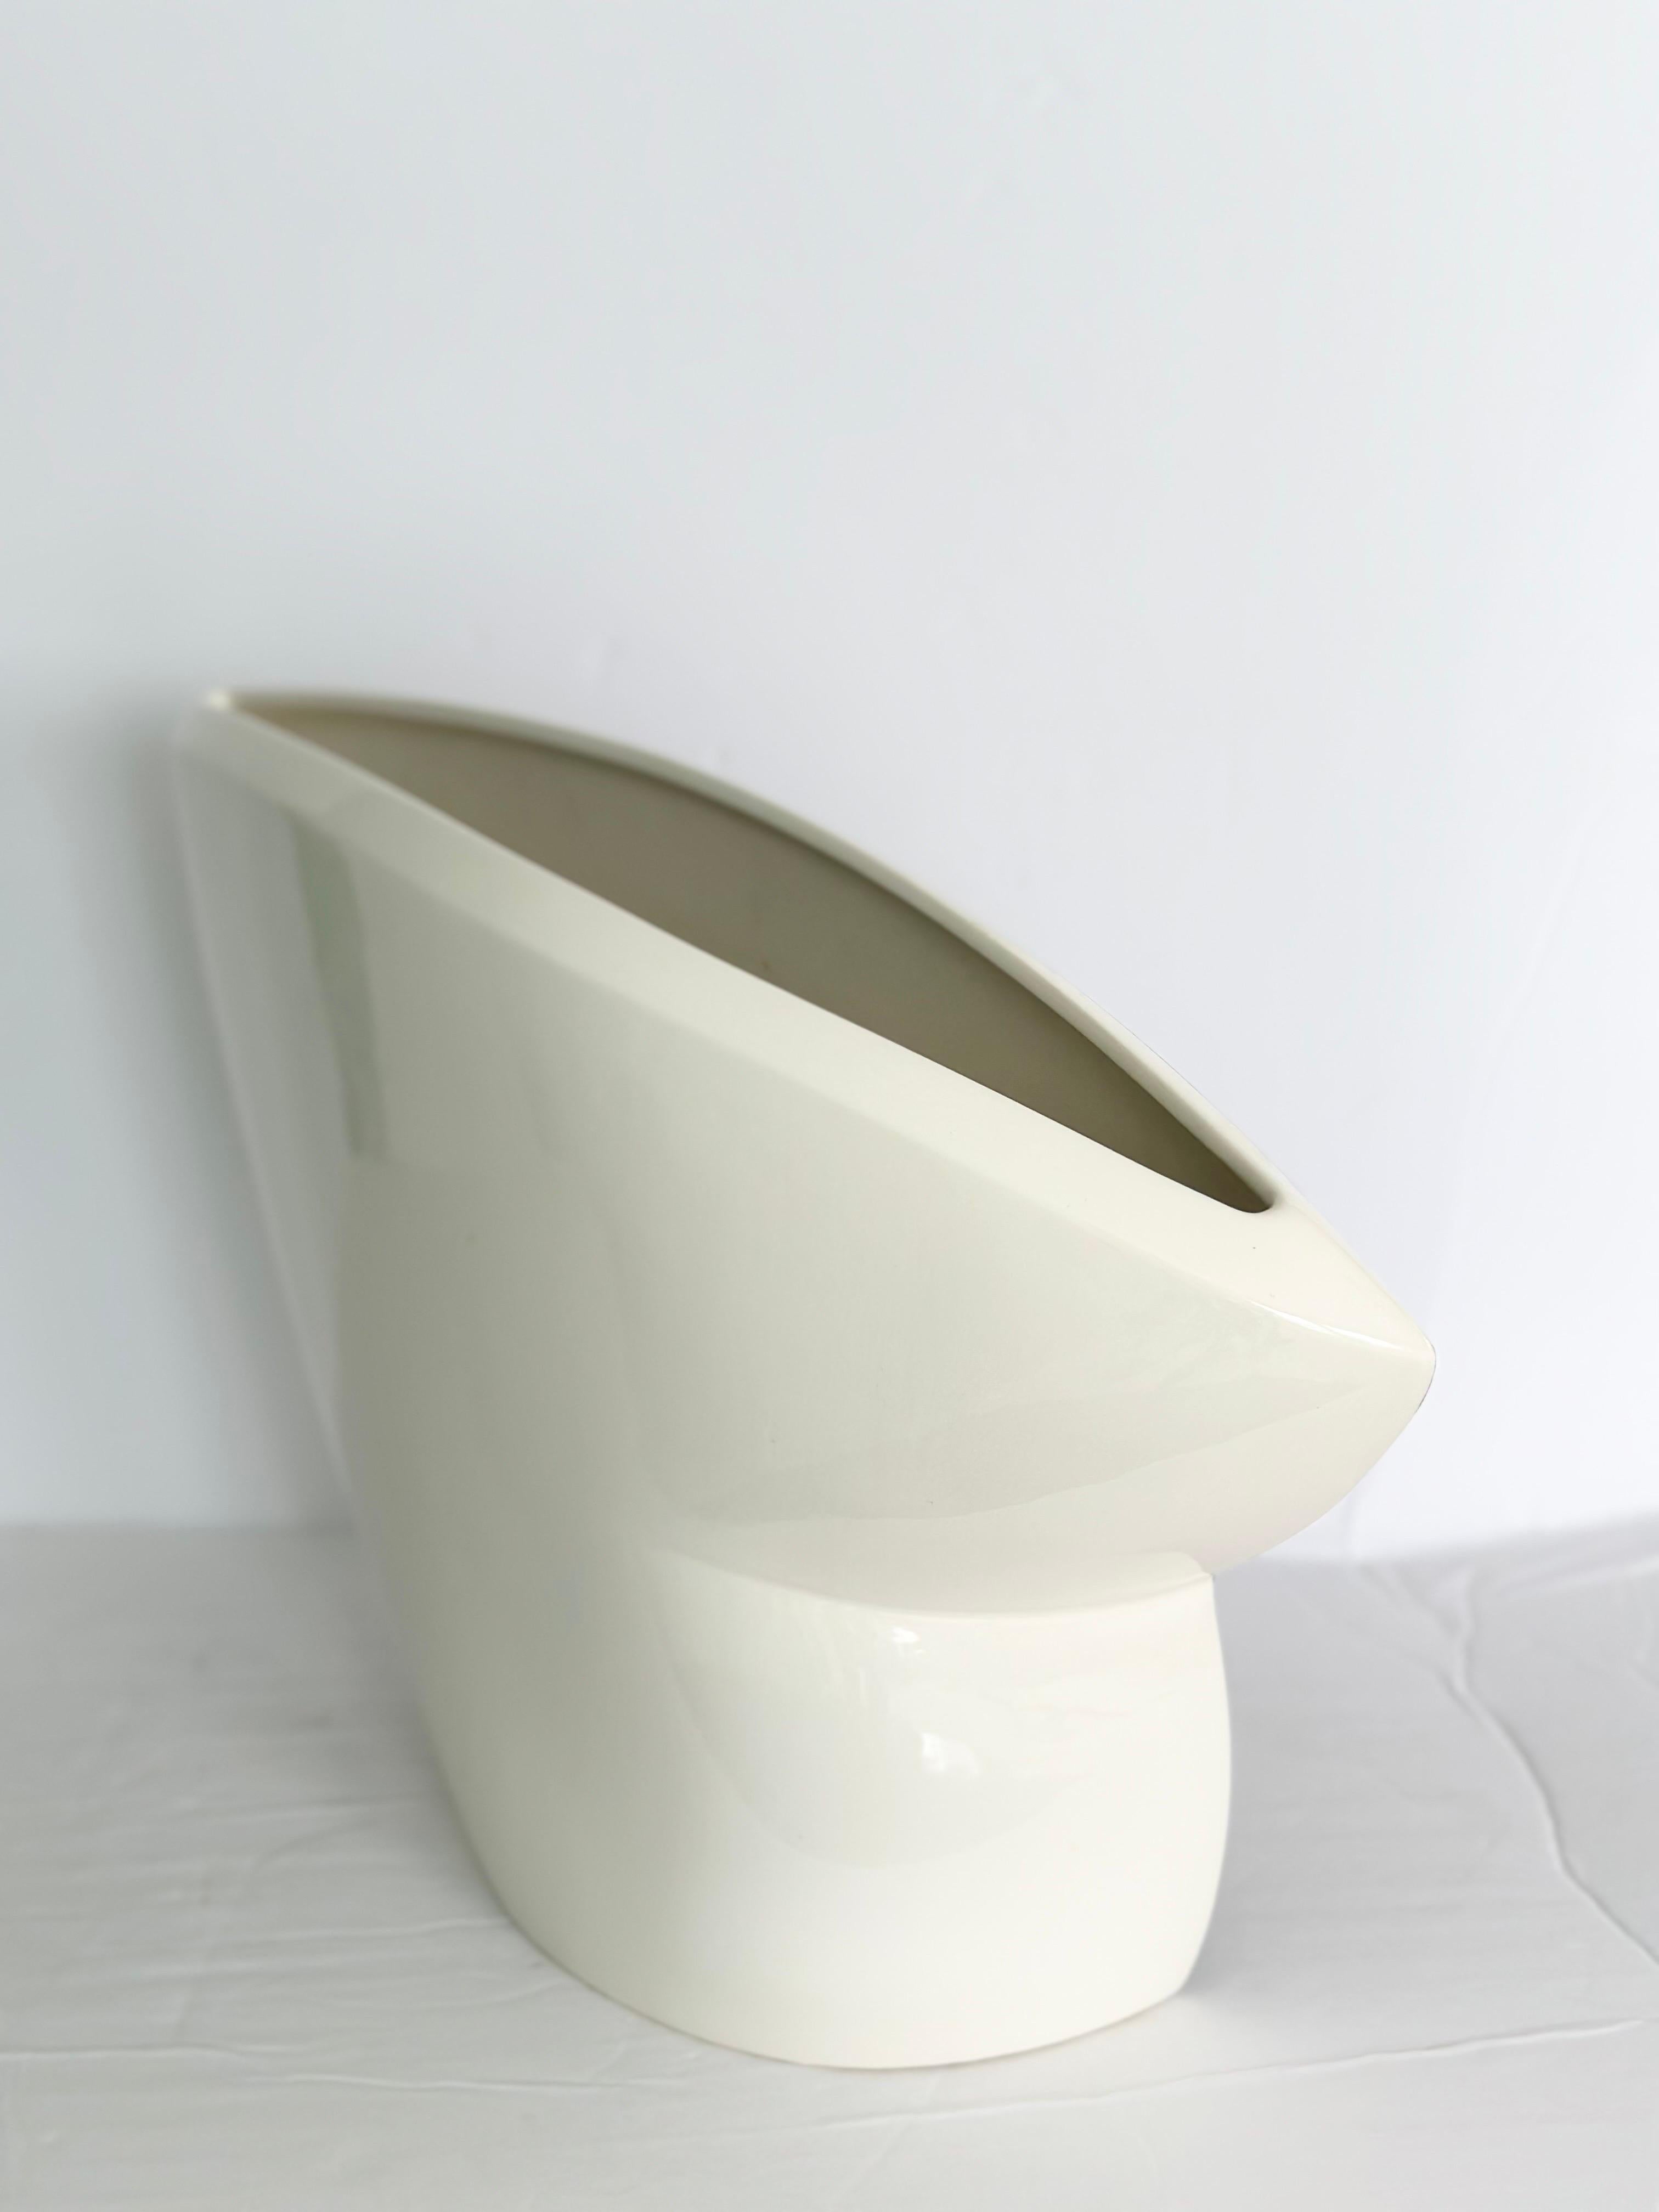 1990s John Bergen Studio Postmodern Black and White Ceramic Amorphous Vase  For Sale 2